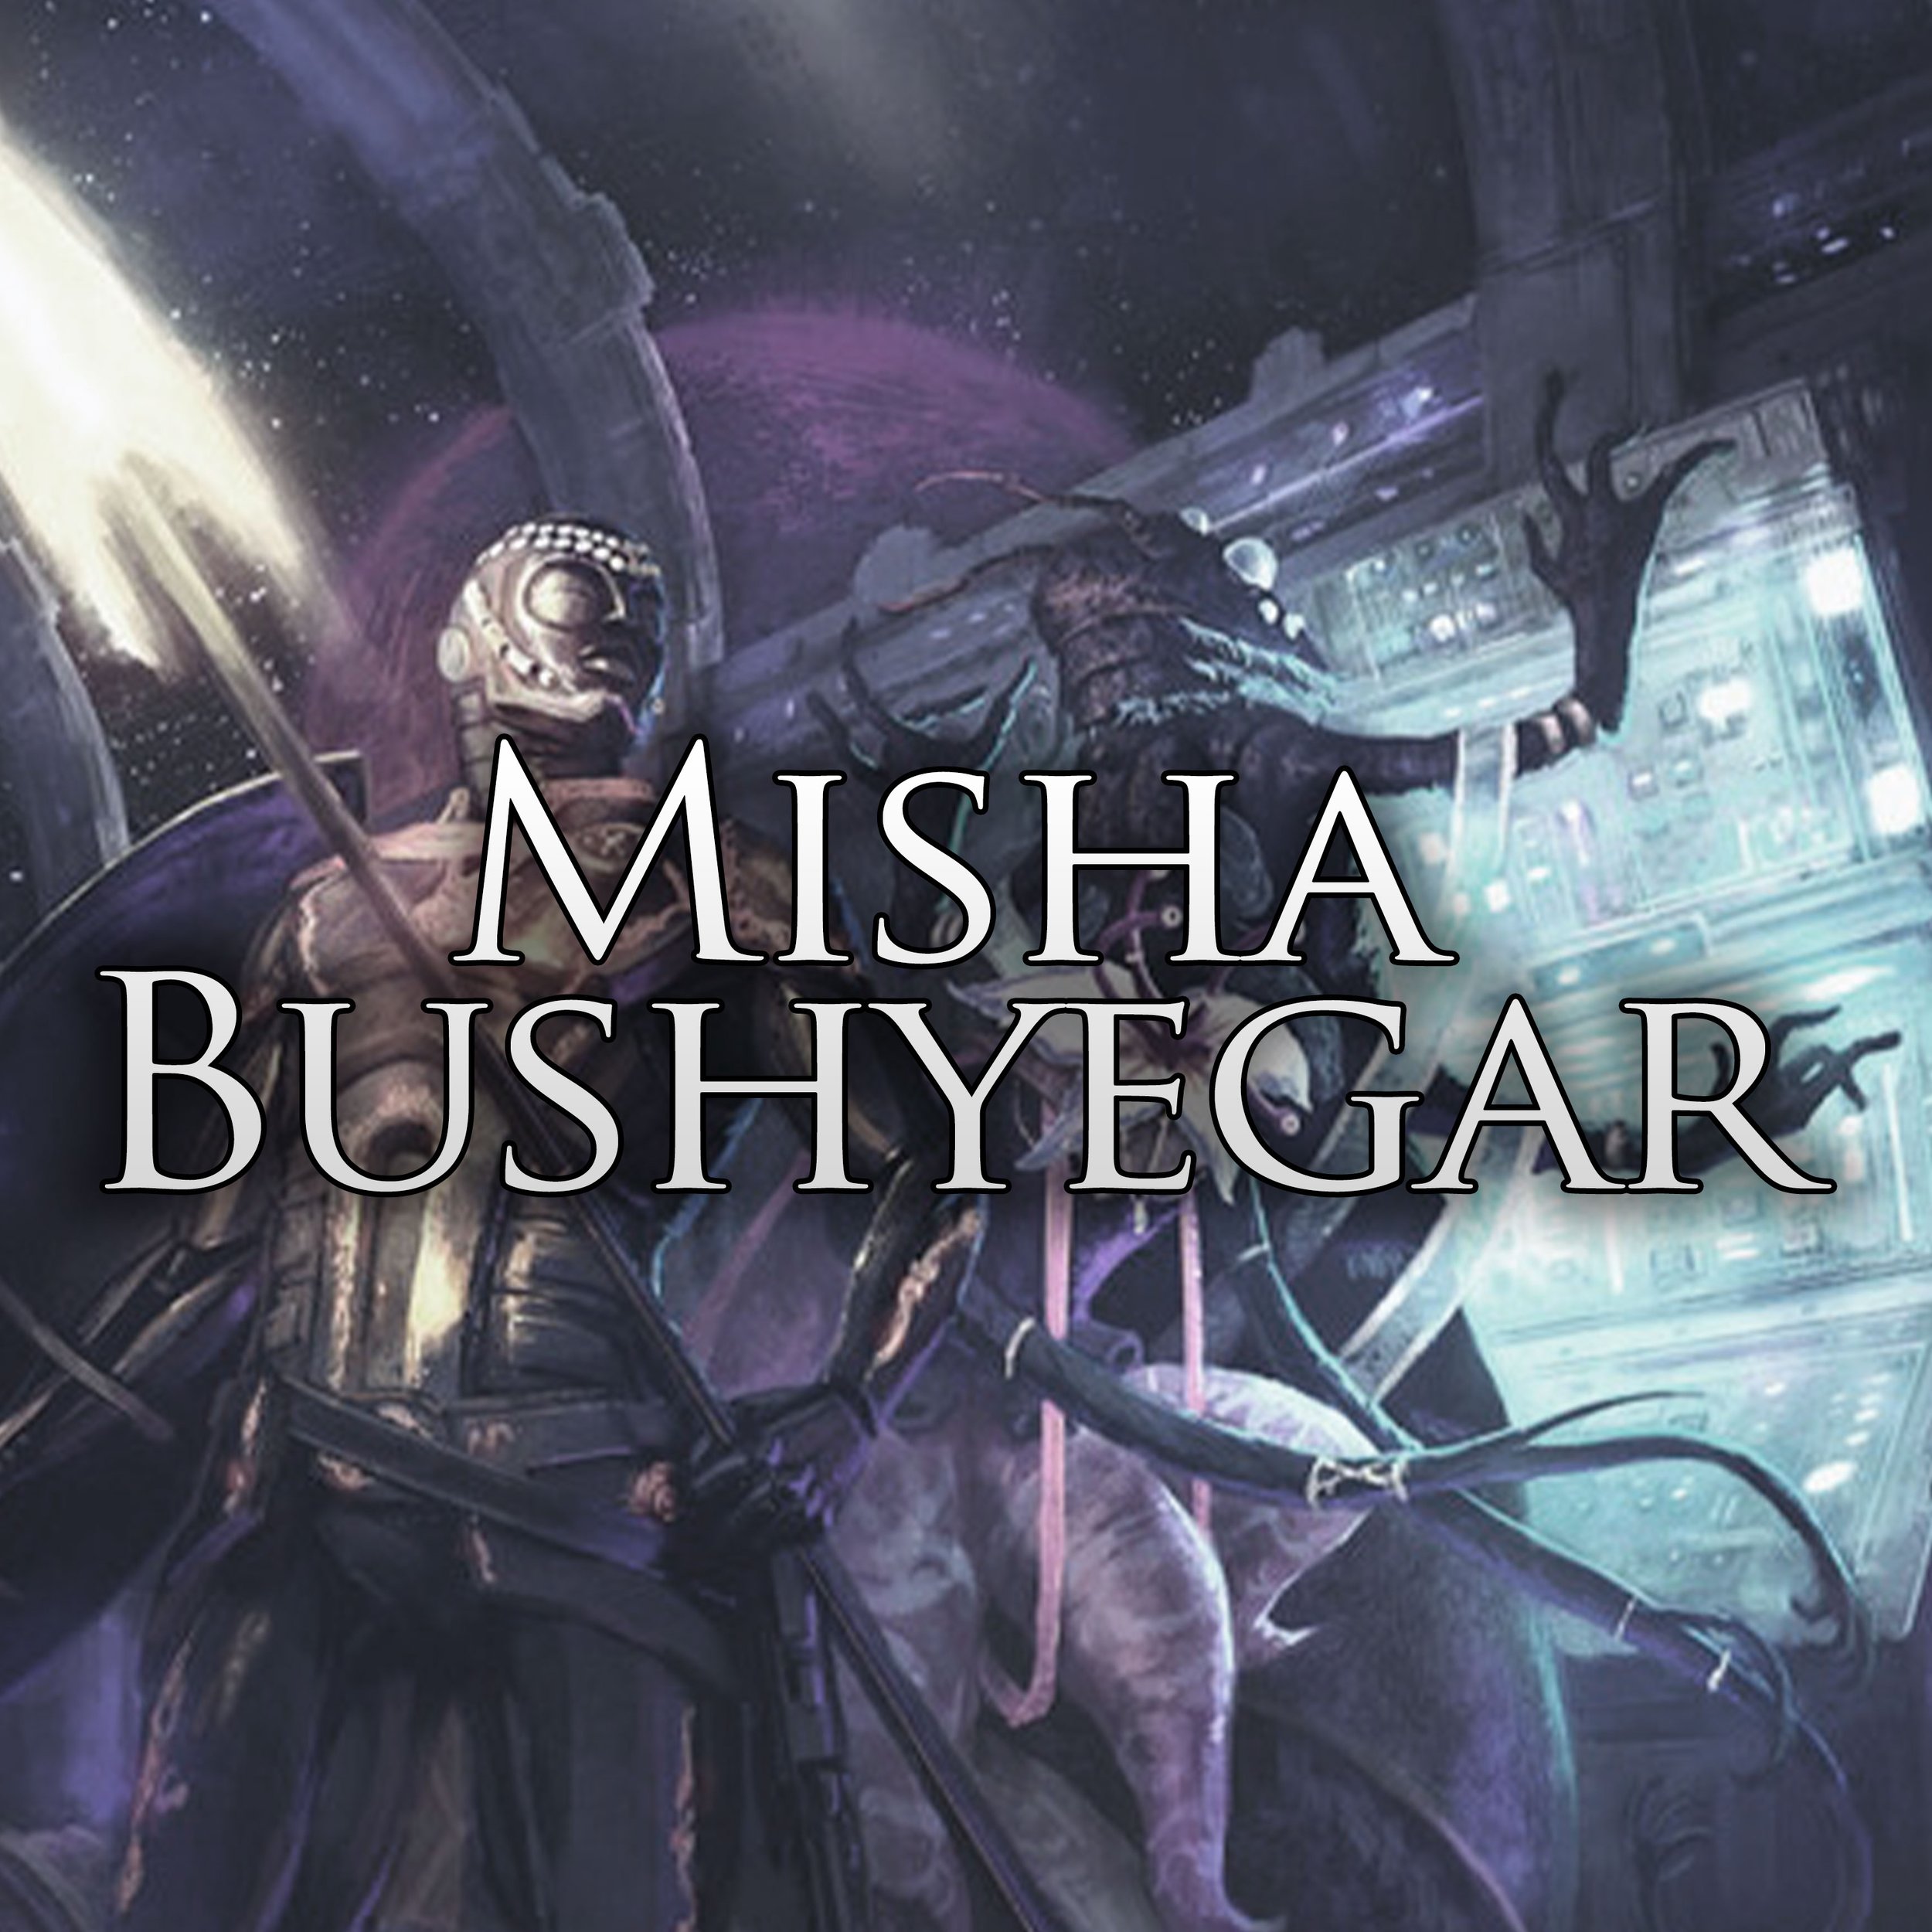 MtM-Misha-Bushyegar.jpg